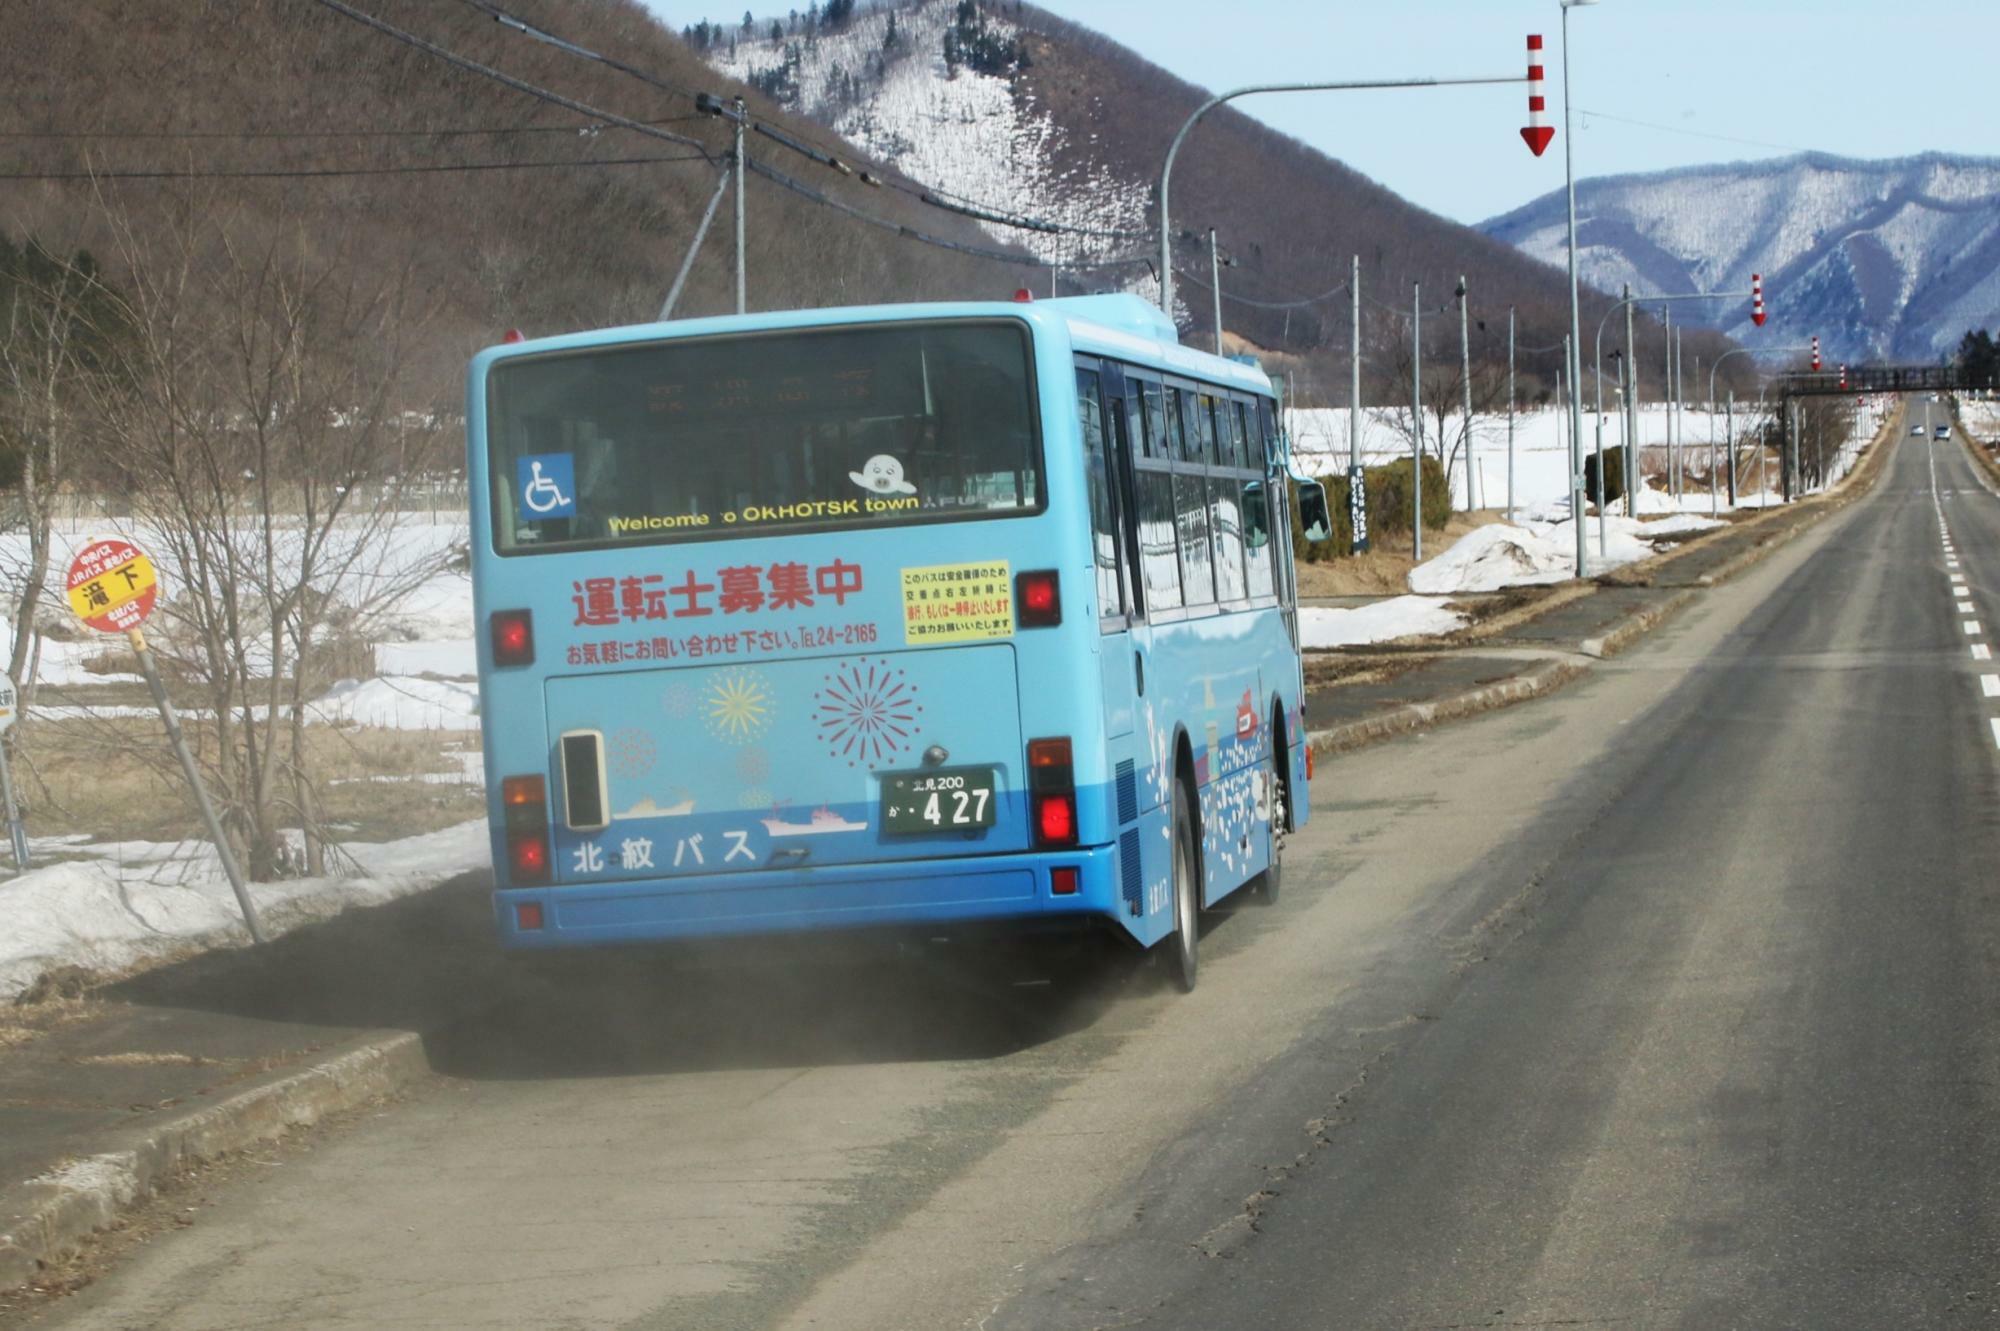 滝下バス停では北紋バスの路線バスを追い抜いた(車内より撮影)